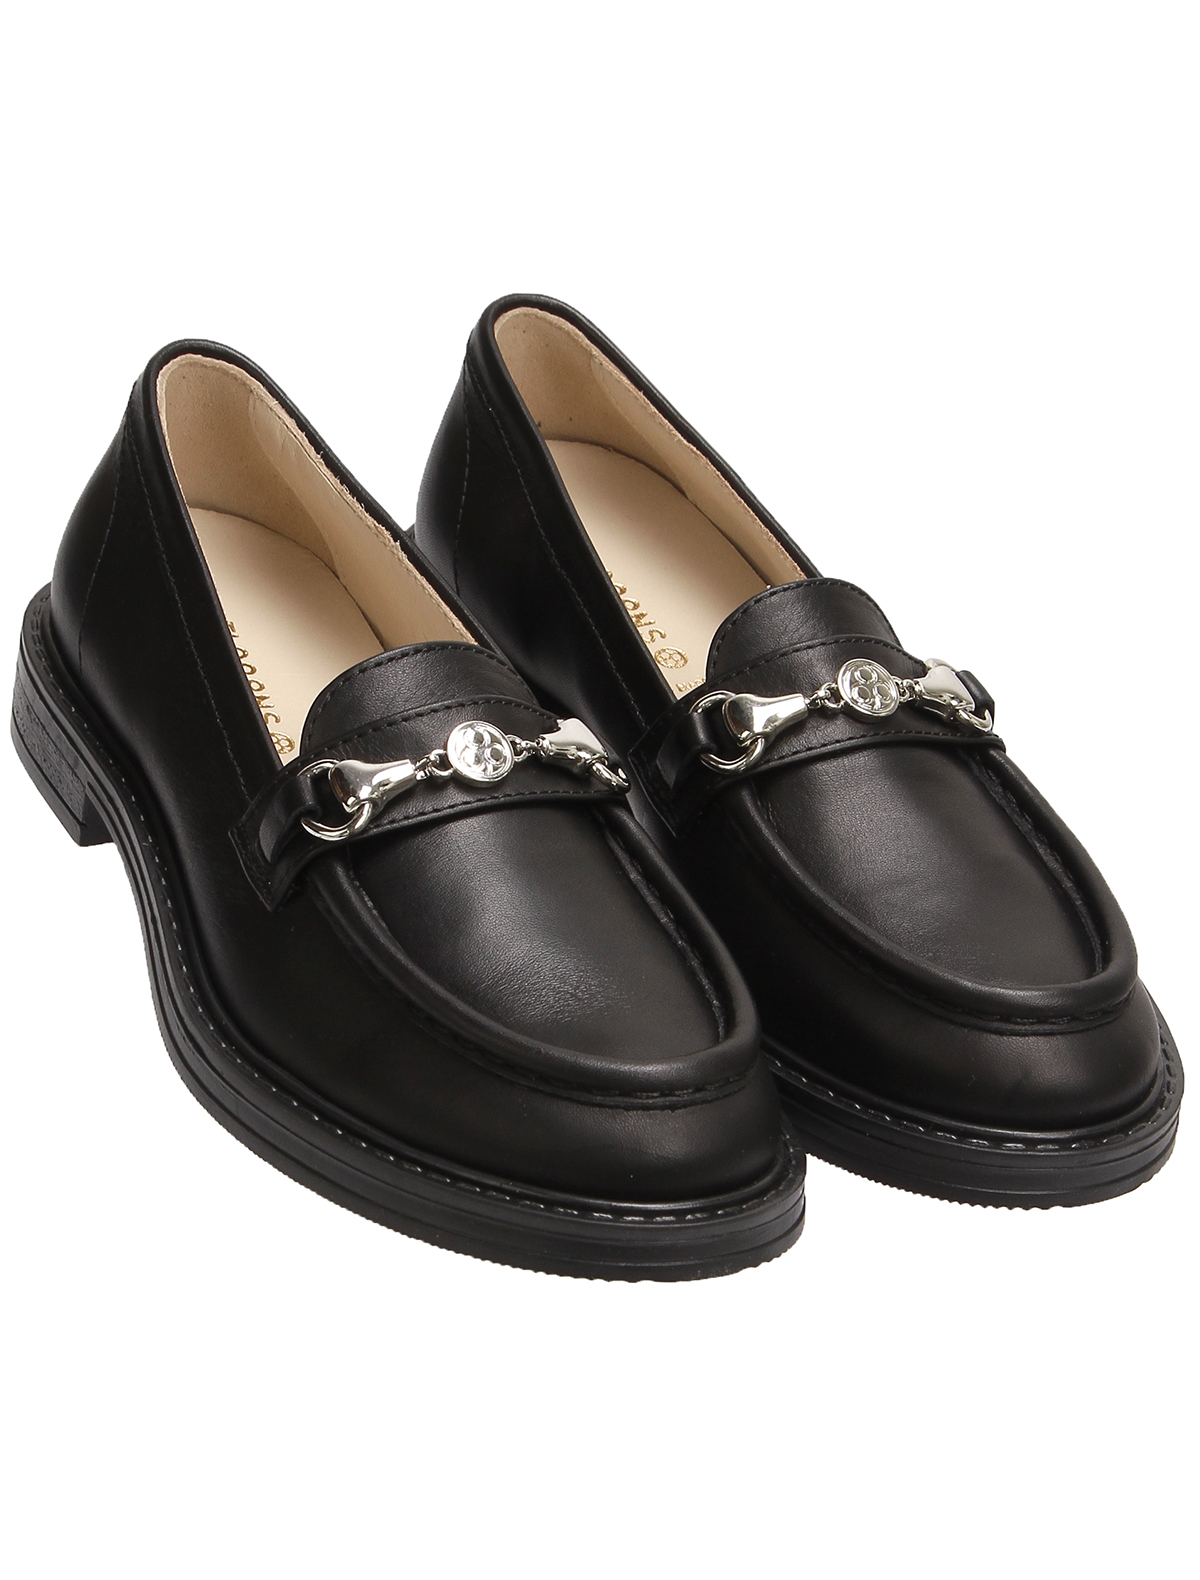 Туфли Florens 2495659, цвет черный, размер 34